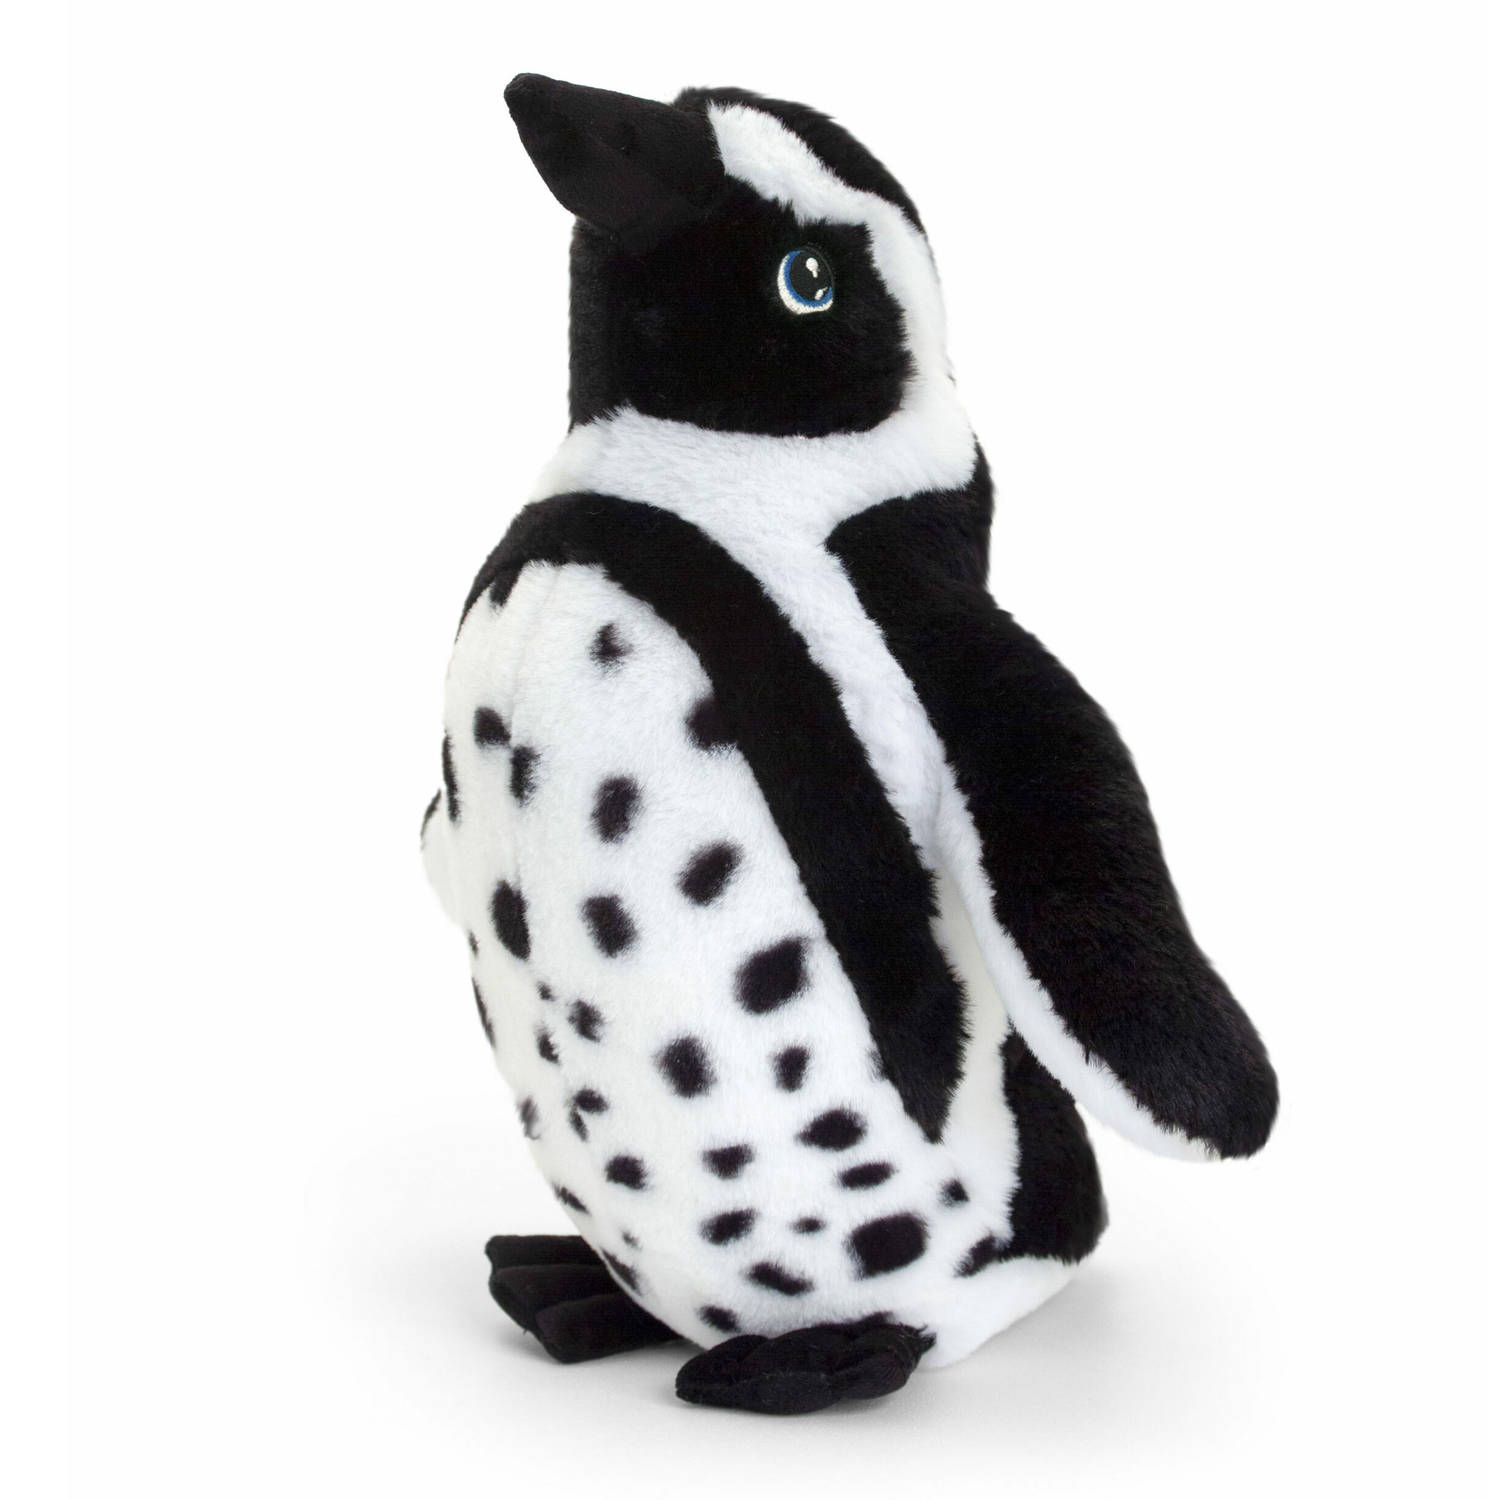 Keel Toys pluche Humboldt pinguin knuffeldier - wit/zwart - staand - 40 cm - Pooldieren